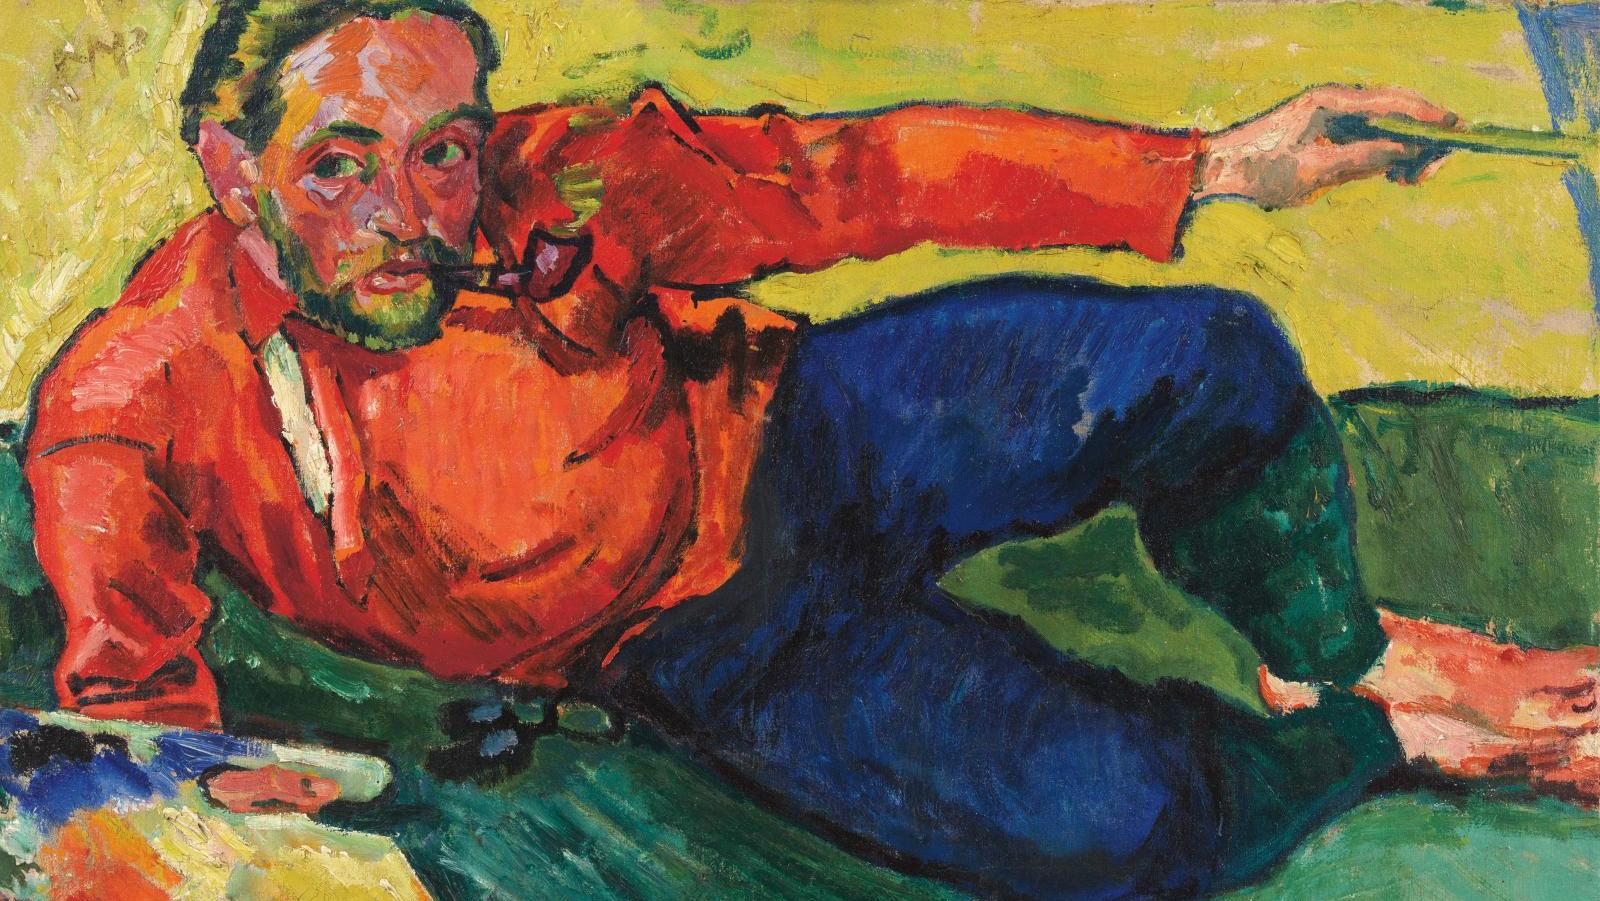 Hermann Max Pechstein (1881-1955), Autoportrait, couché, 1909, huile sur toile, 73,5... Pechstein ou l’apogée de l’expressionnisme allemand